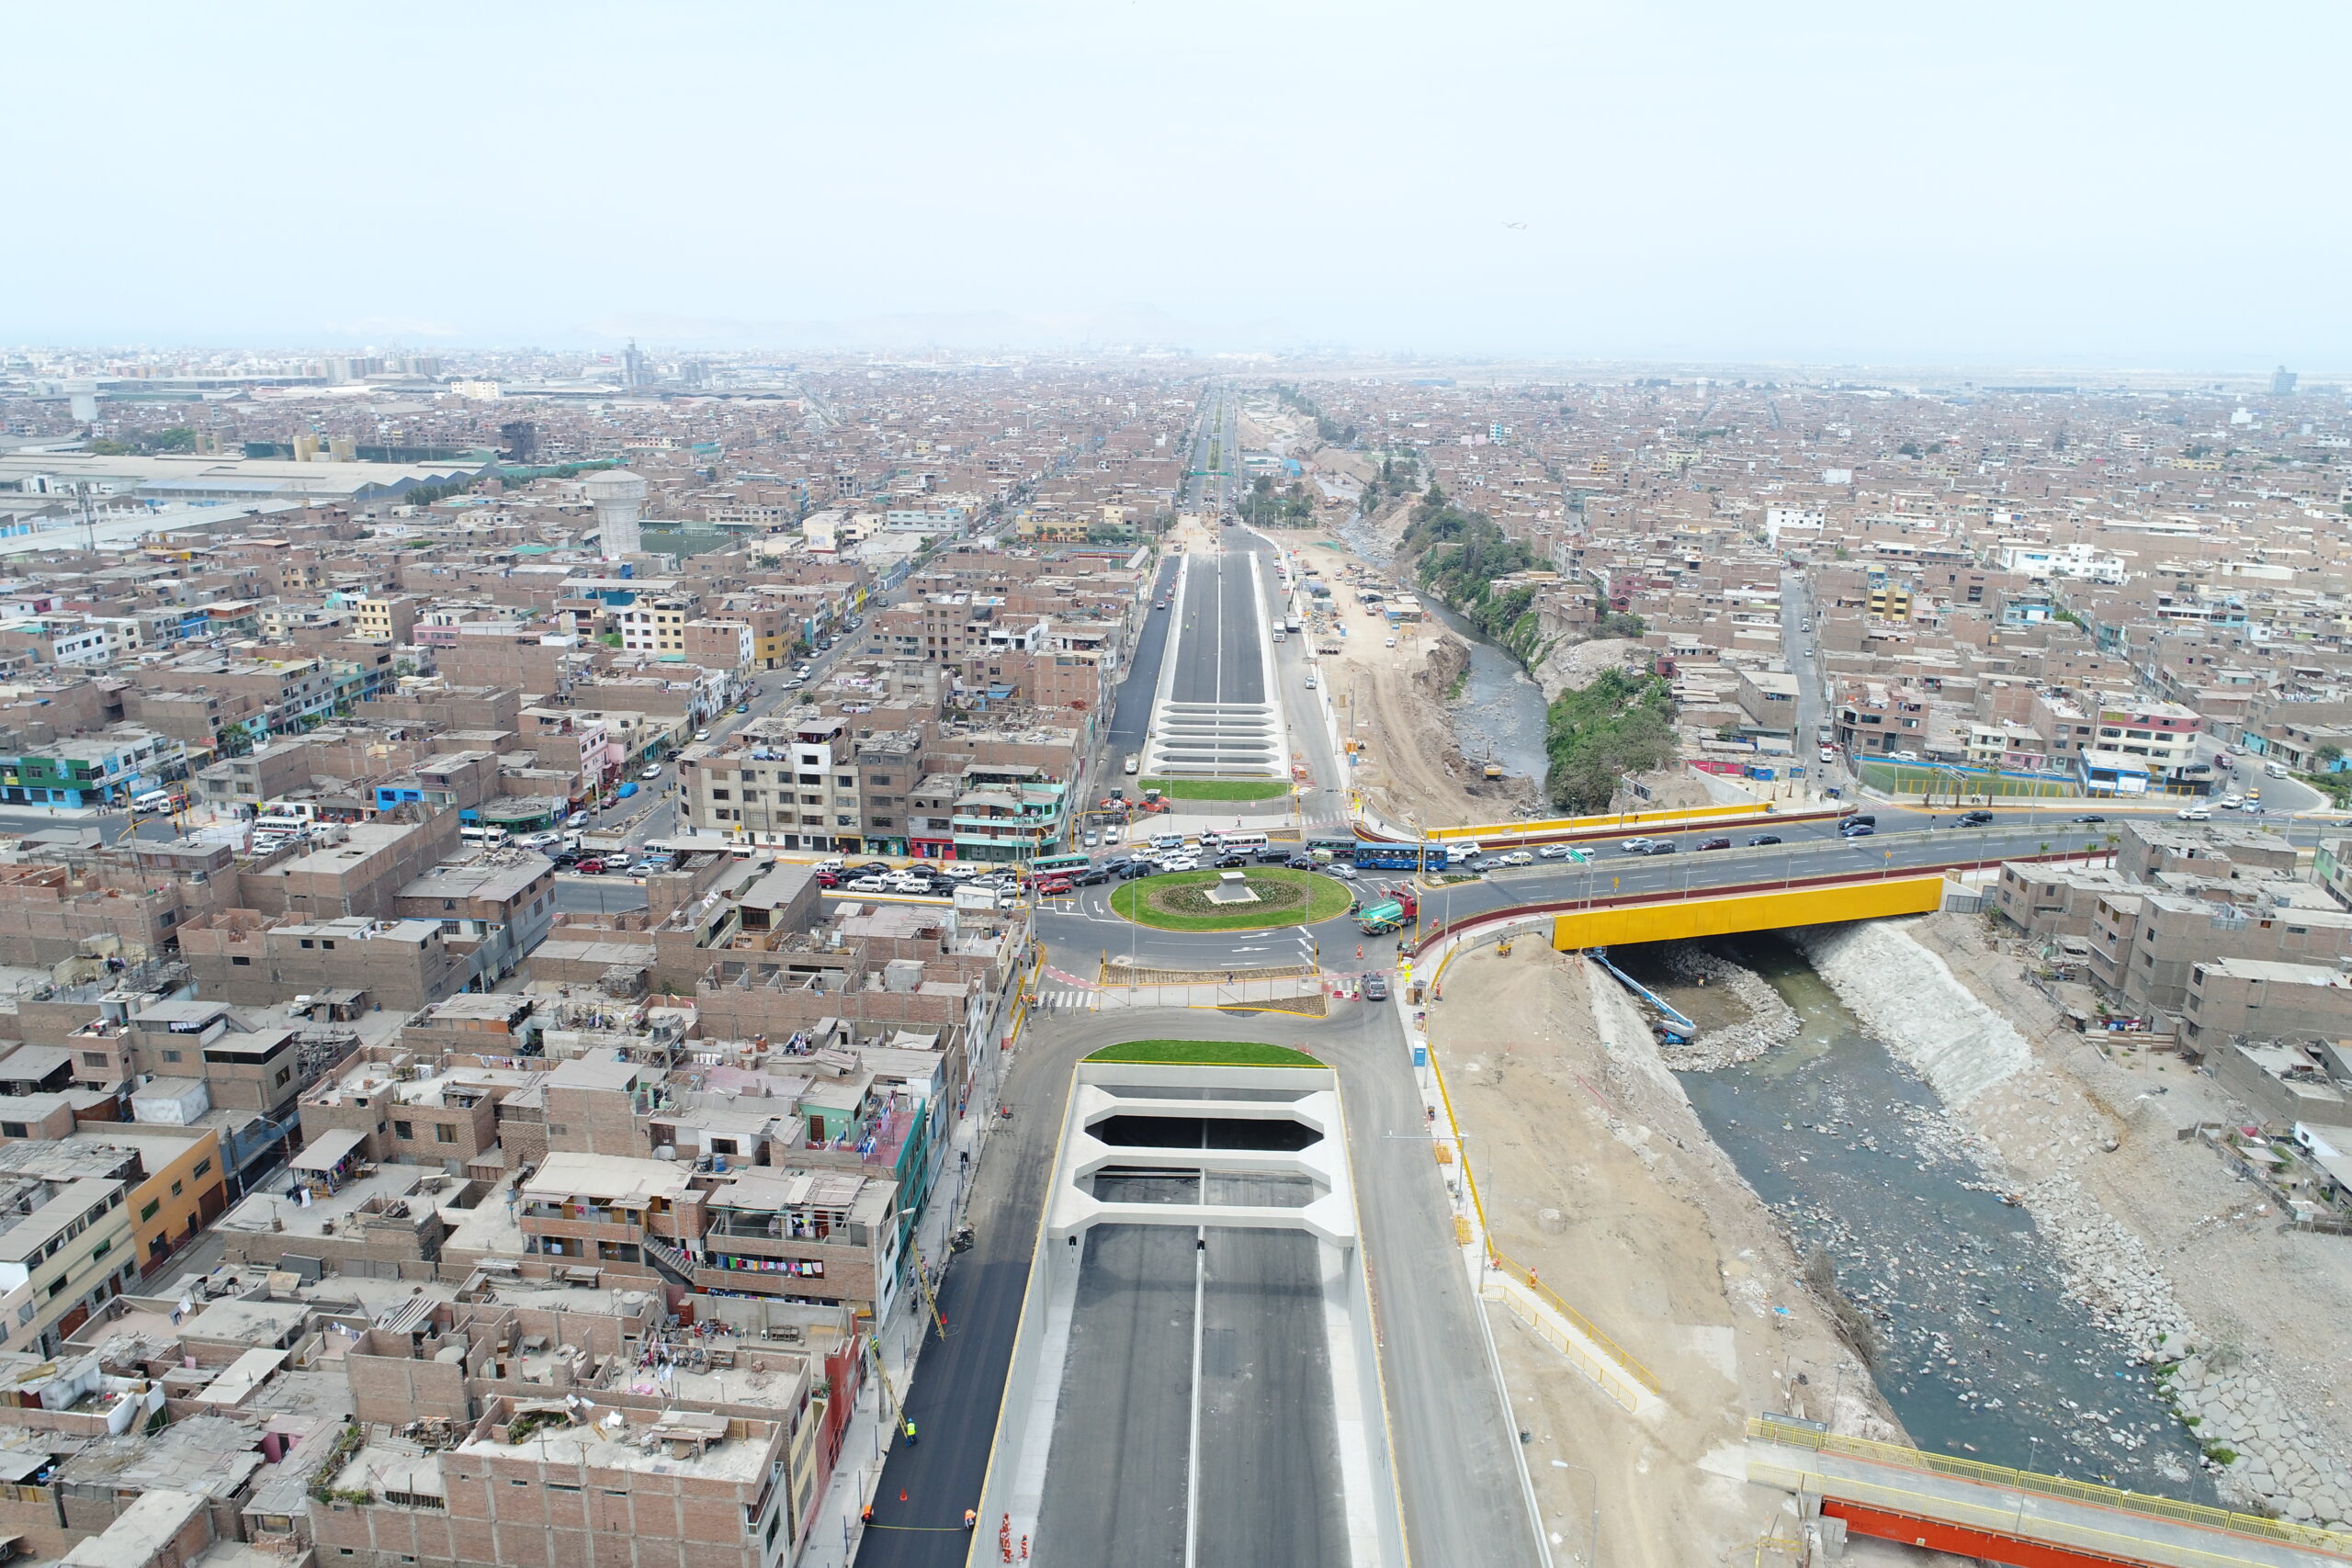 Morelco: Vía Expresa Línea Amarilla que conecta la ciudad de Lima de sur a norte en 20 minutos